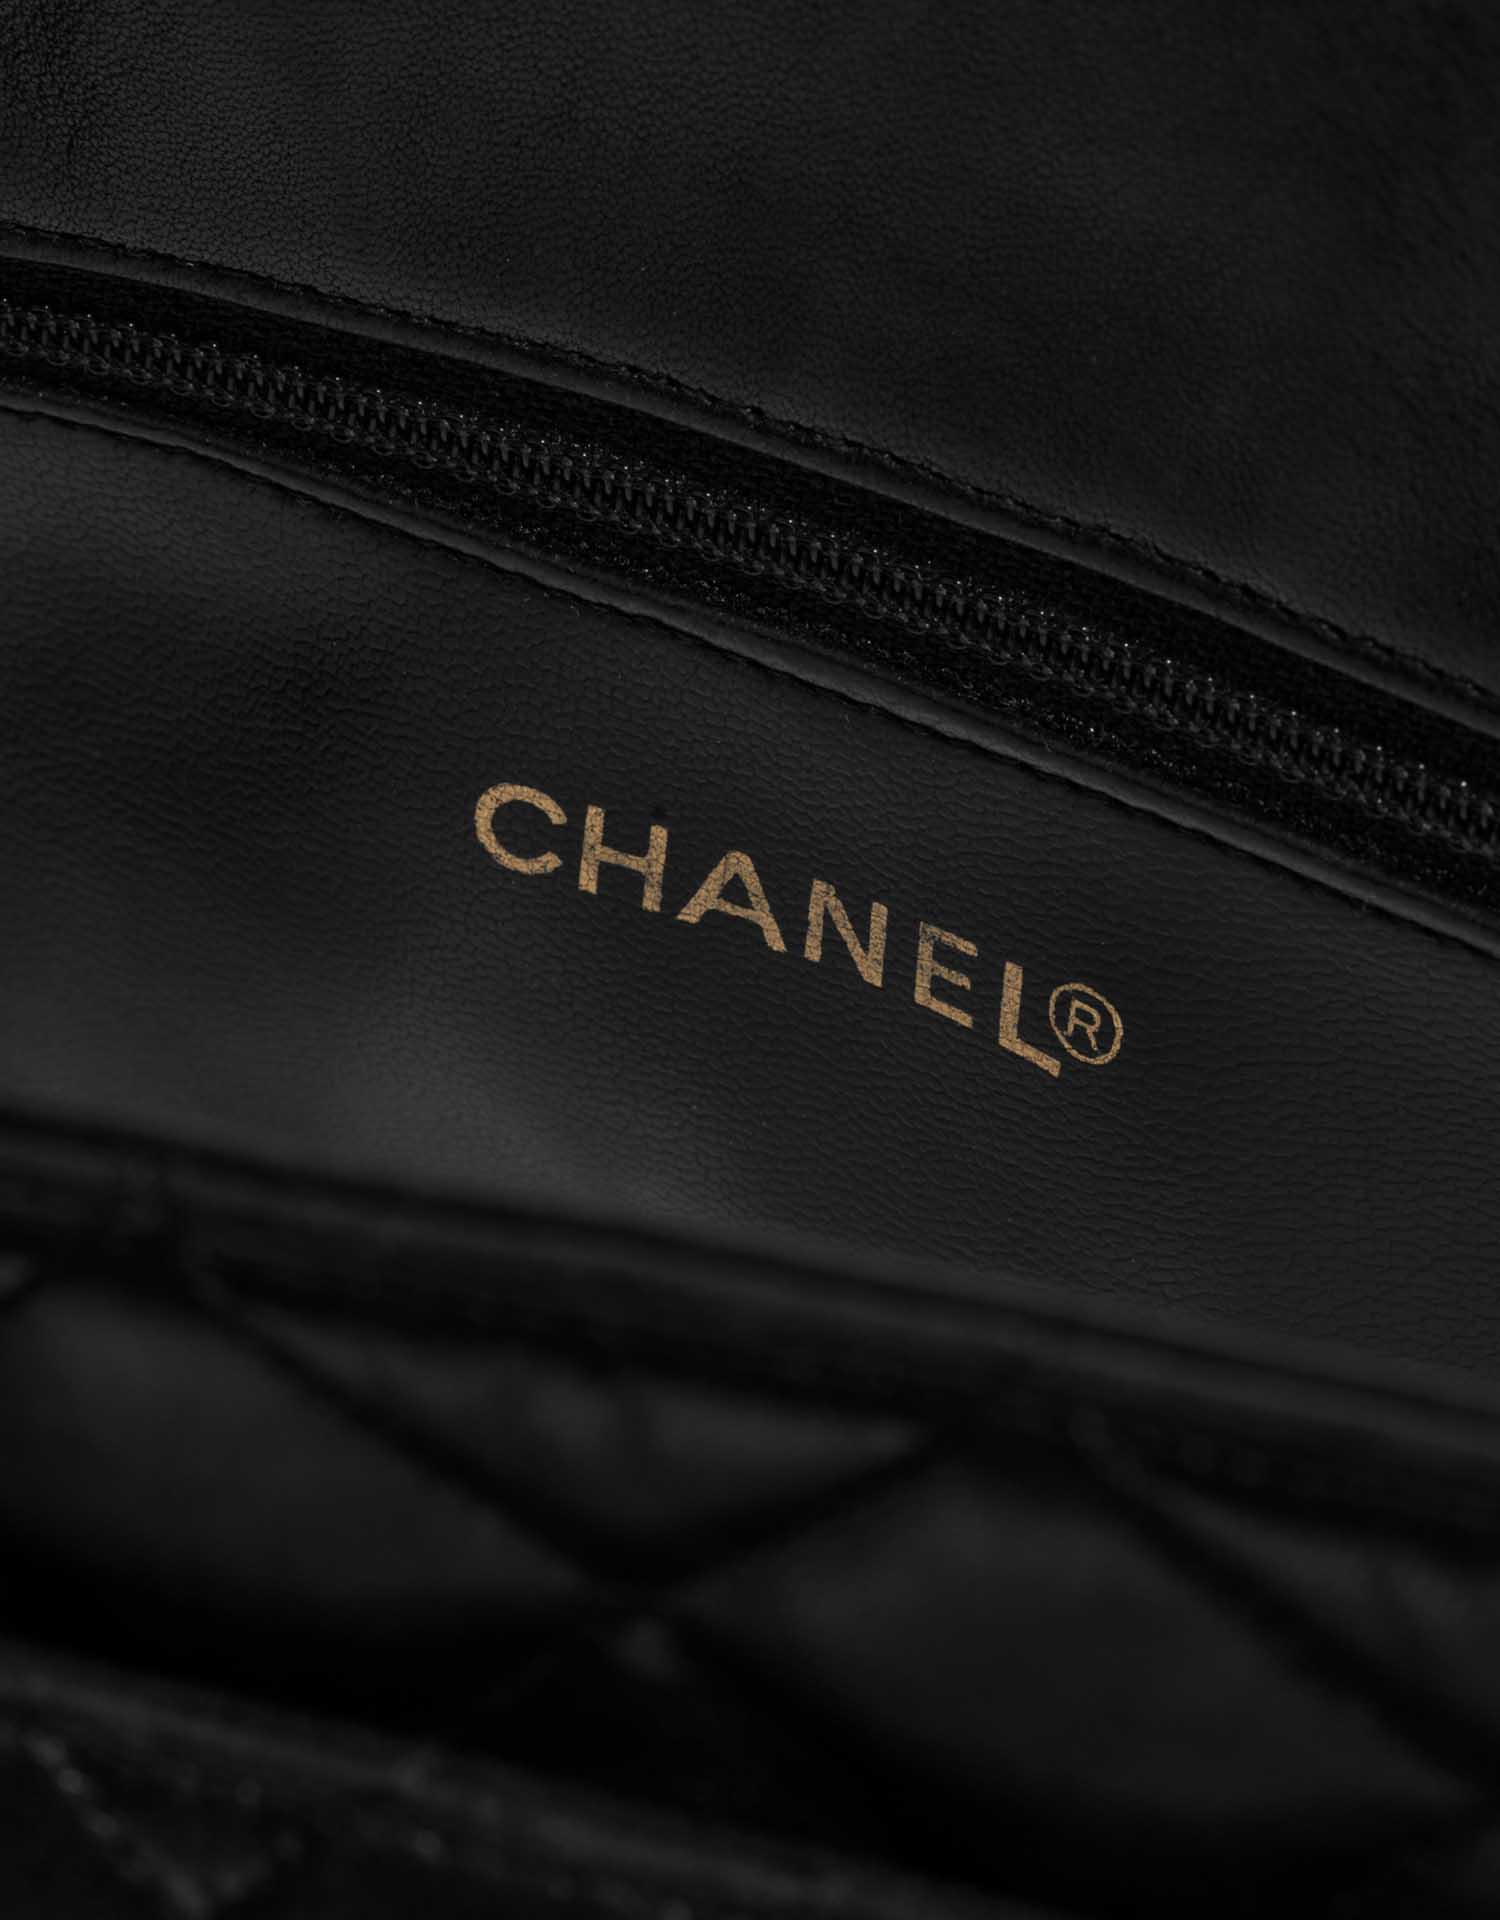 Chanel ShoppingTote Black Logo | Verkaufen Sie Ihre Designertasche auf Saclab.com